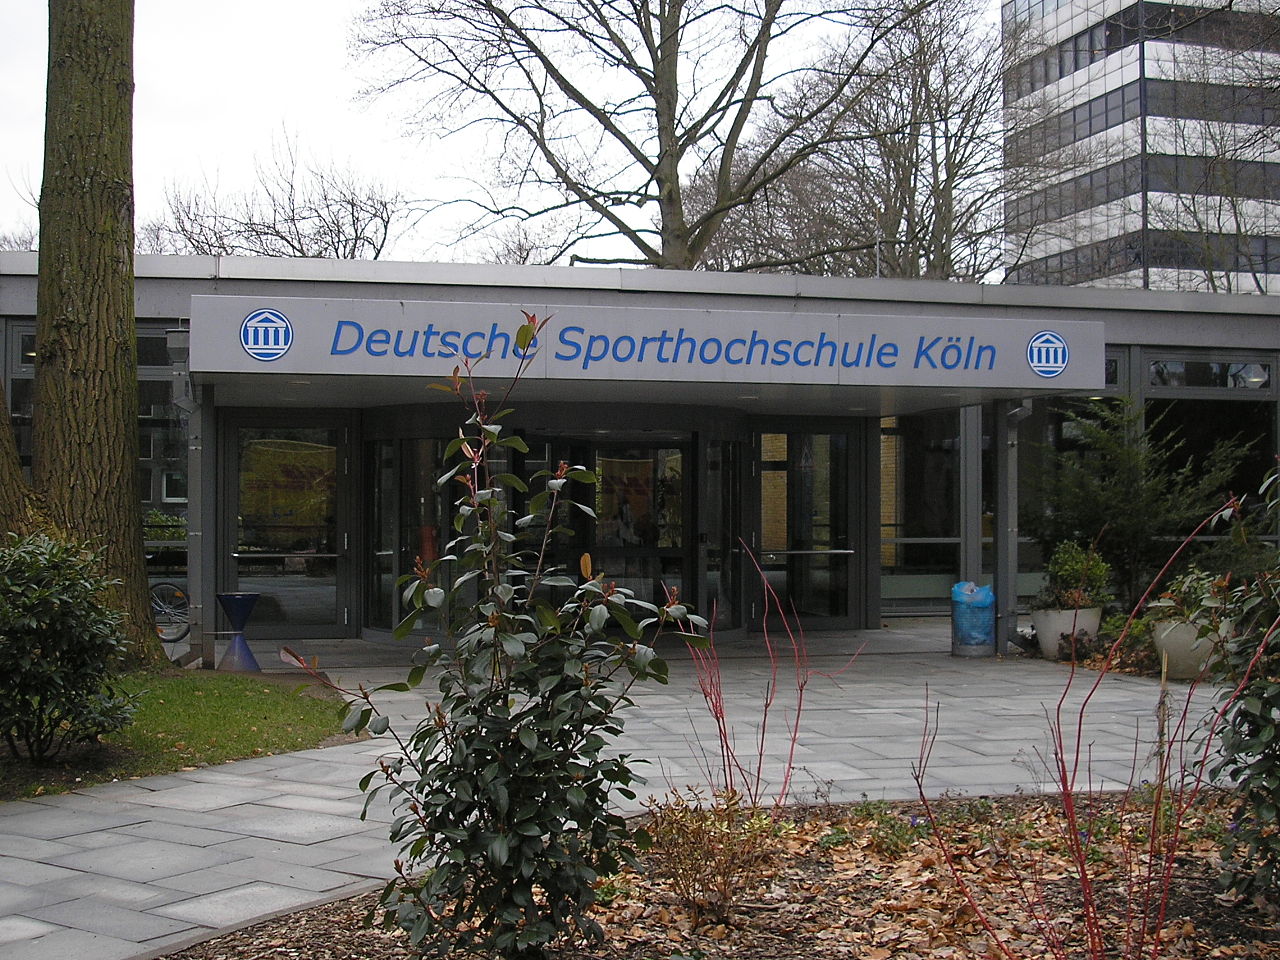 Deutsche Sporthochschule Köln, Haupteingang